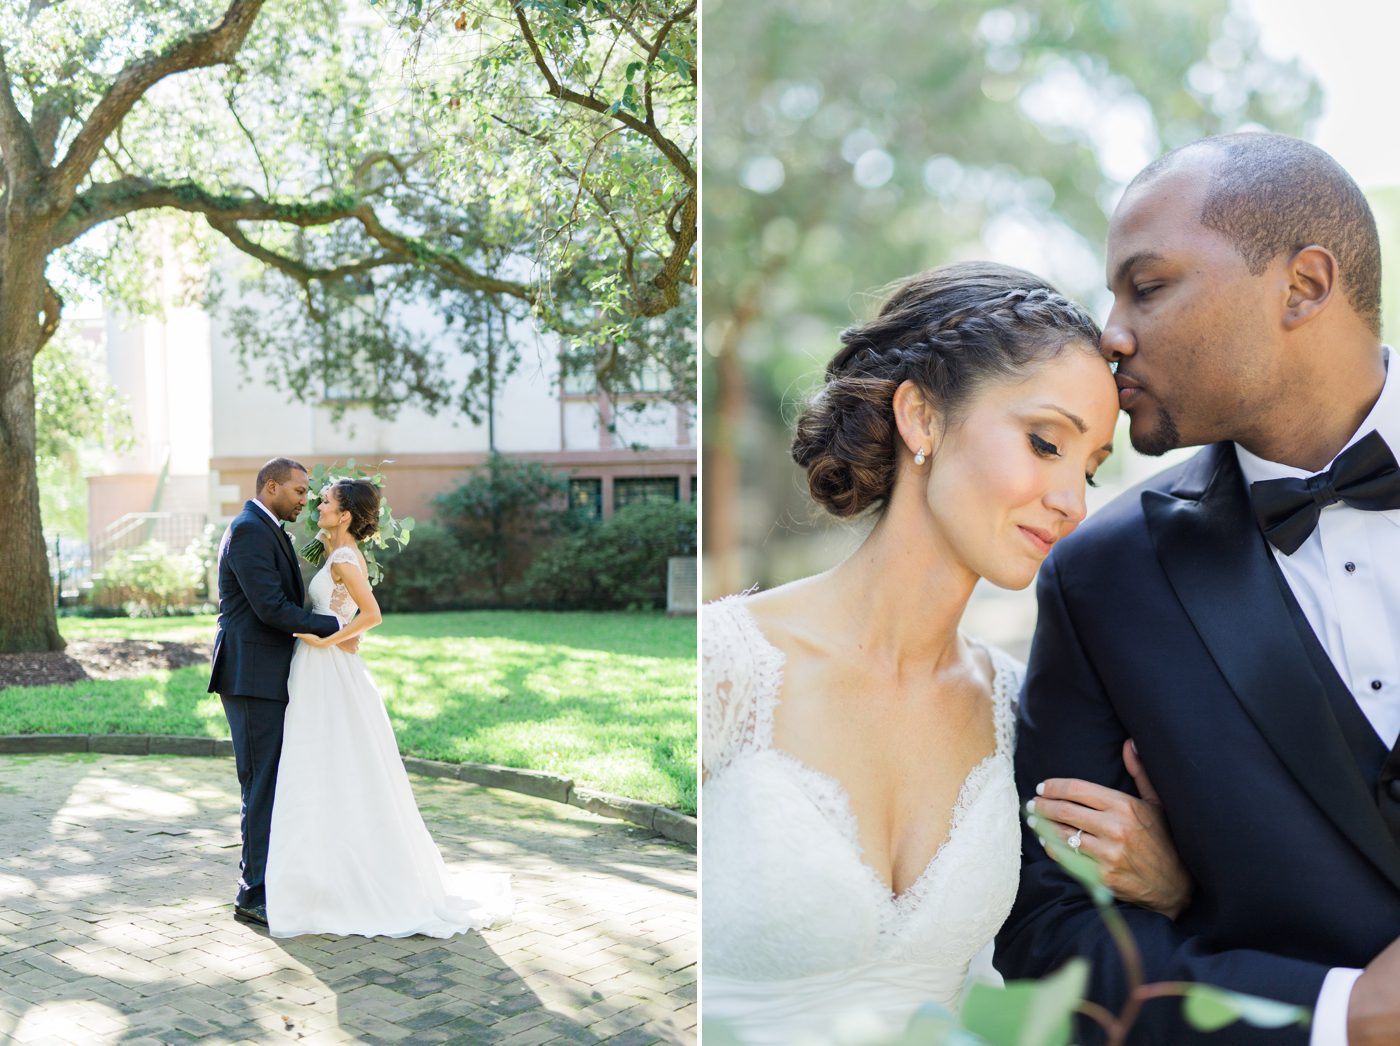 Charleston SC wedding photography | Elegant William Aiken House Wedding Photos | Charleston SC wedding photographers Catherine Ann Photography